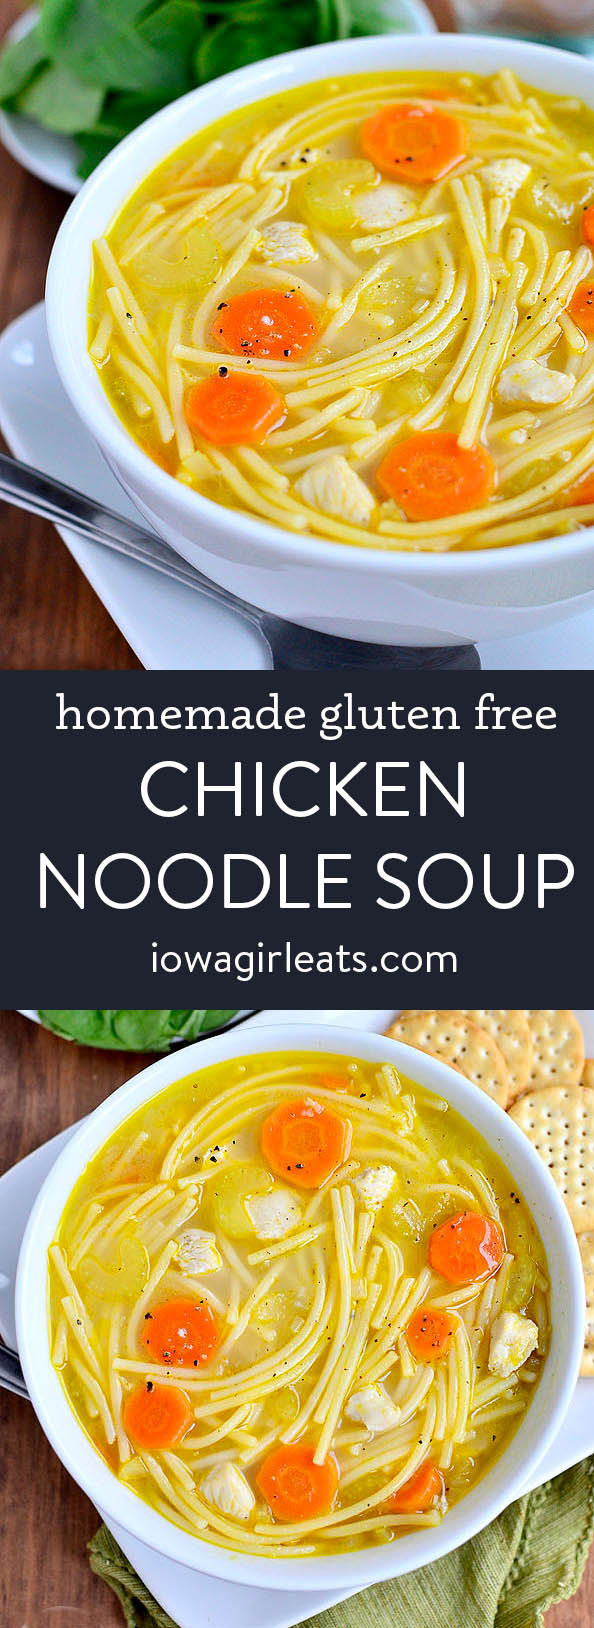 https://iowagirleats.com/wp-content/uploads/2014/10/Homemade-Gluten-Free-Chicken-Noodle-Soup-Pin-srgb.jpg